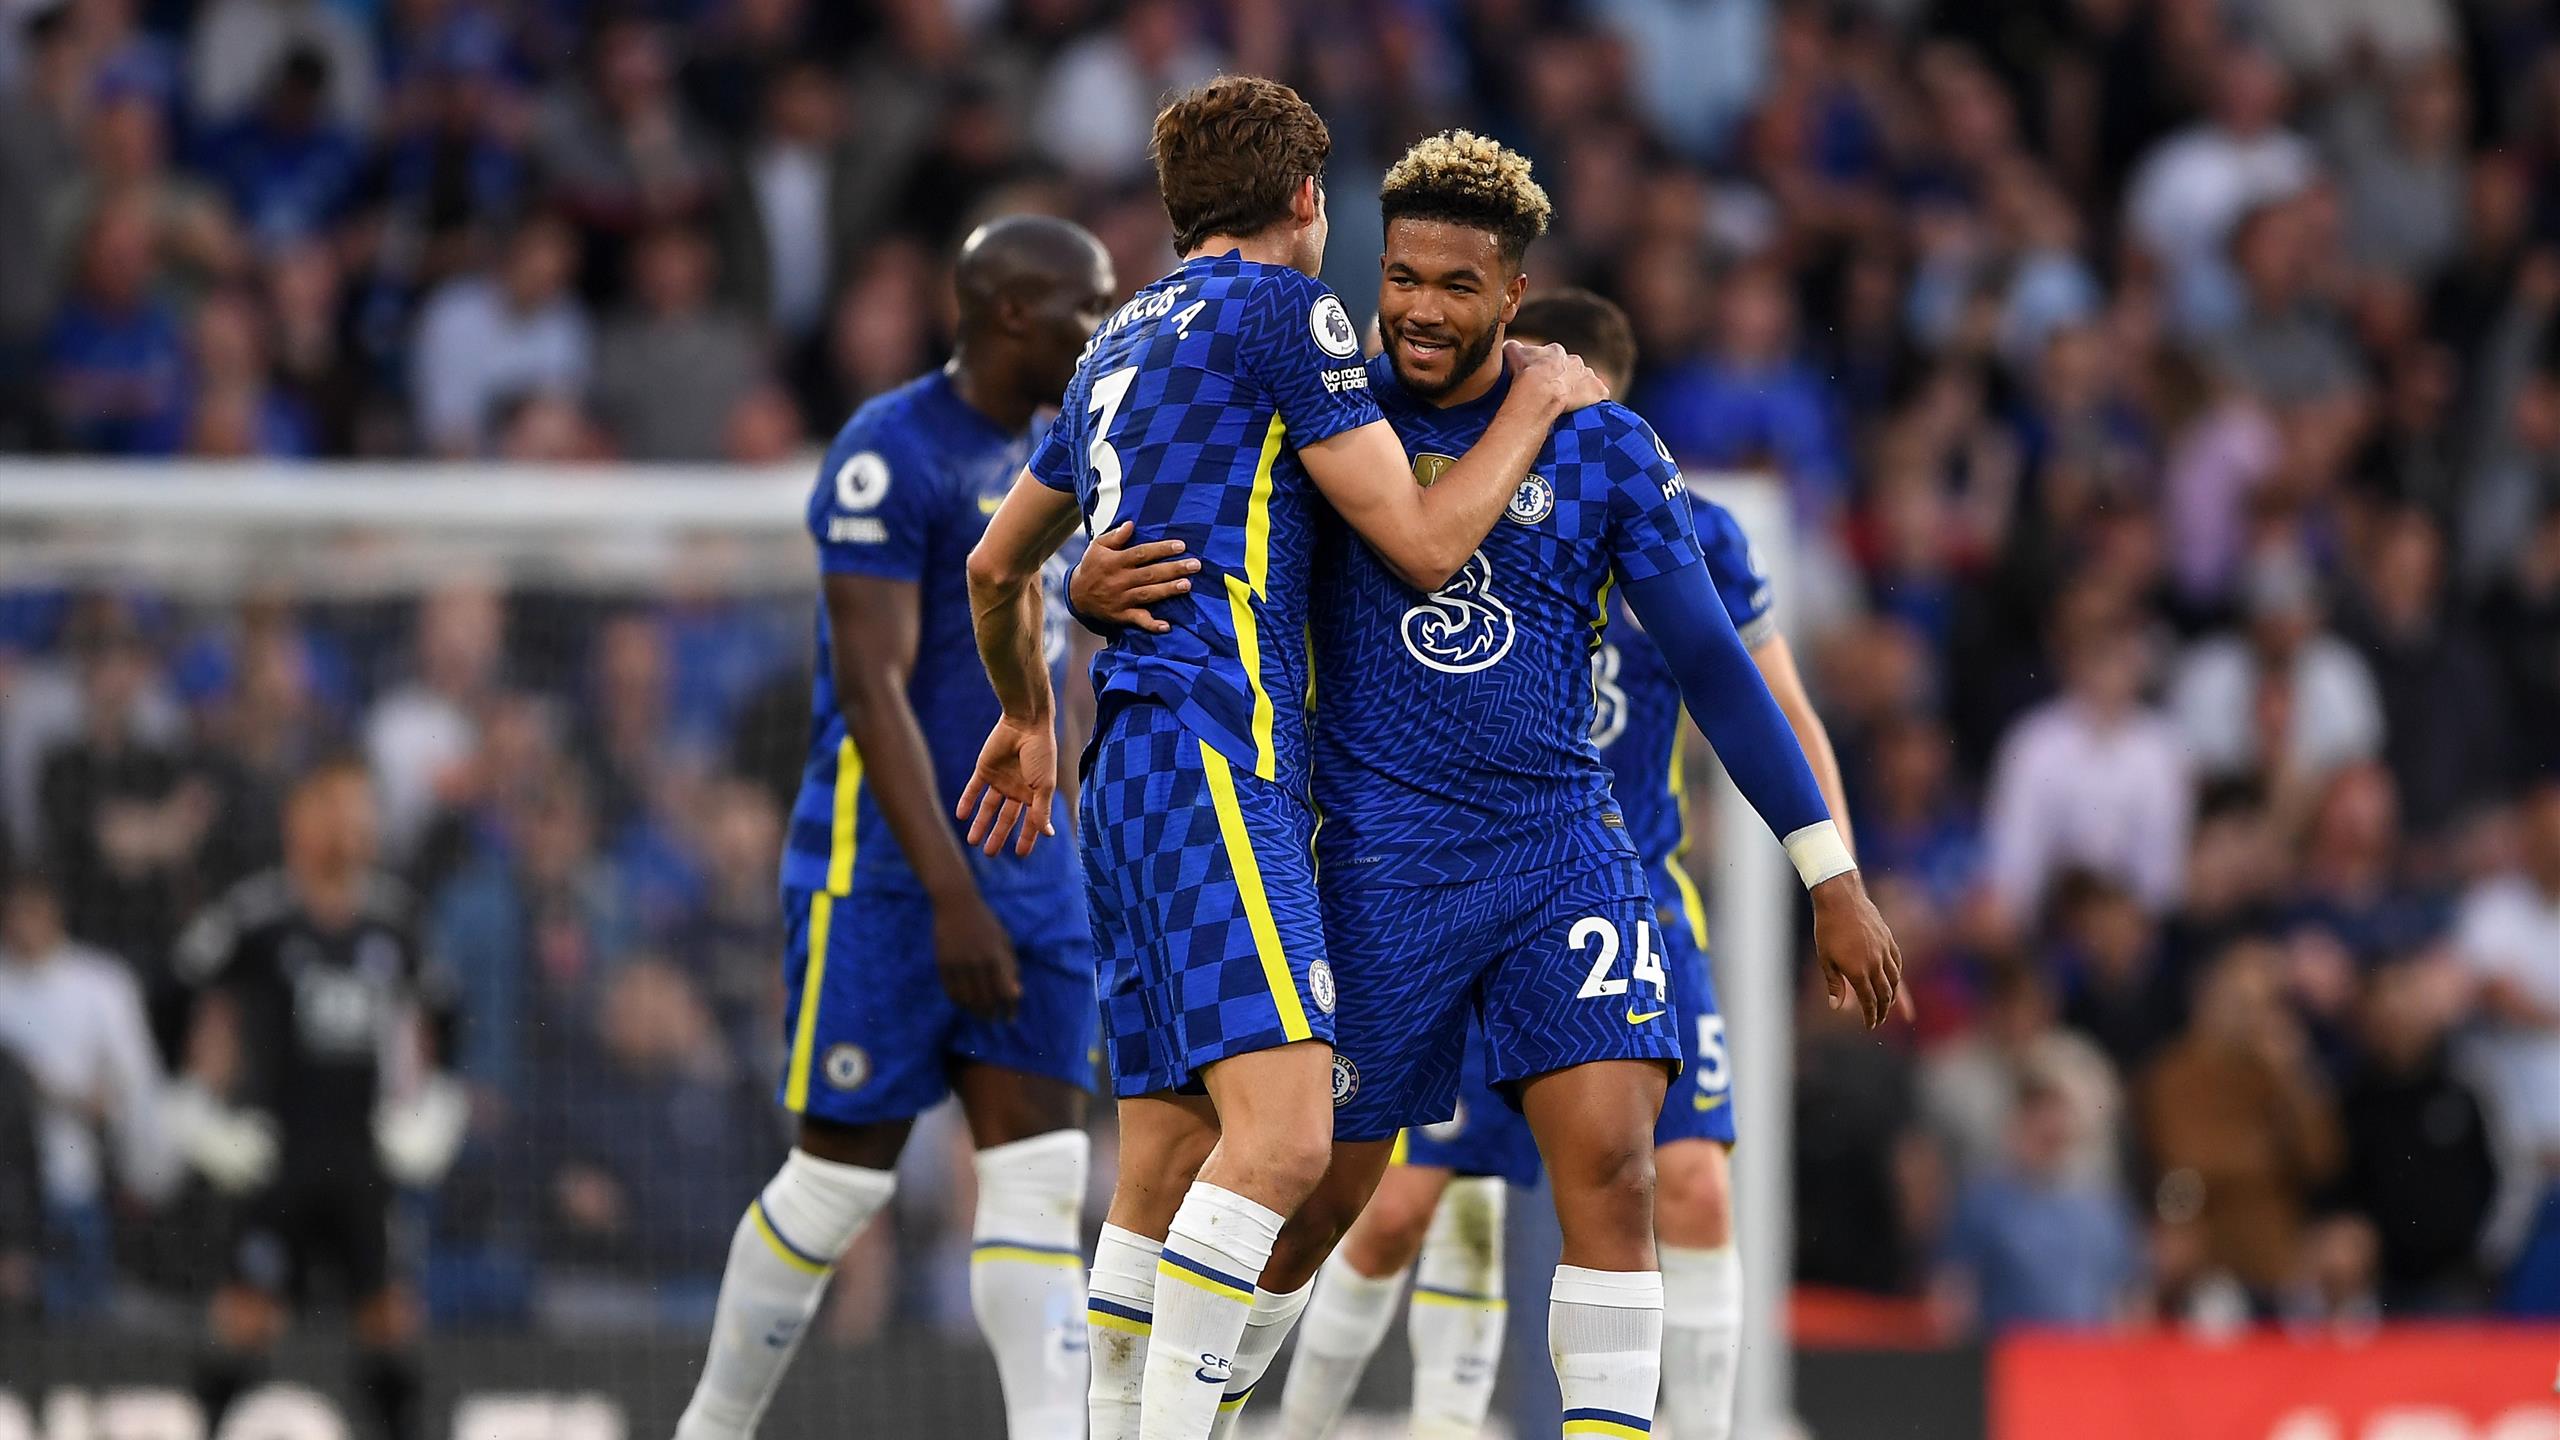 Premier League - Chelsea quasiment assuré du podium, Everton se maintient - Eurosport FR